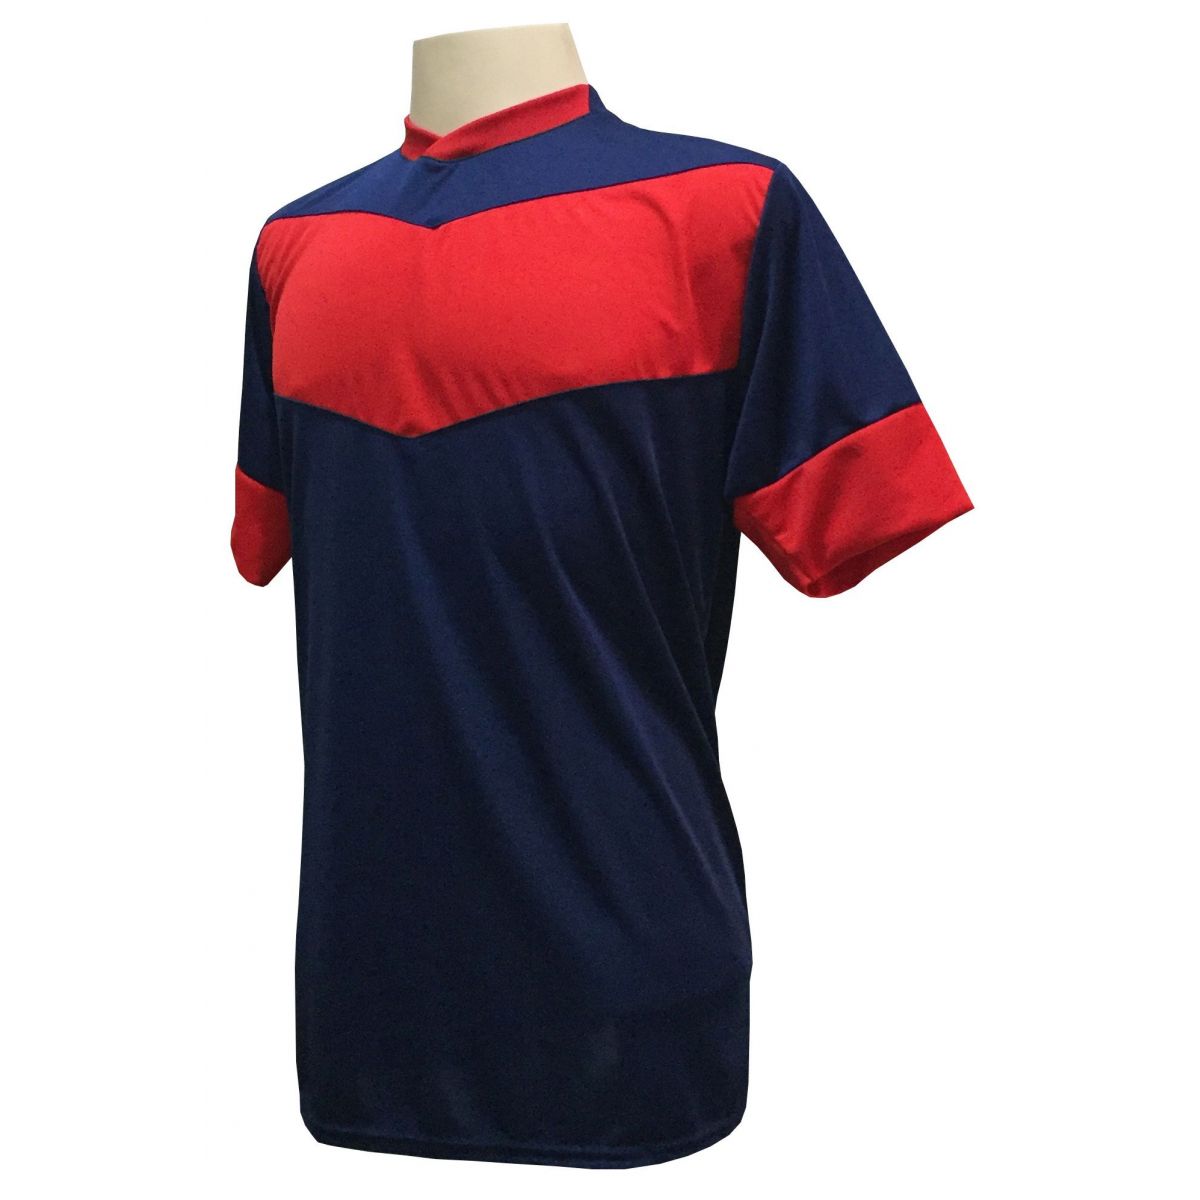 Uniforme Esportivo com 18 camisas modelo Columbus Marinho/Vermelho + 18 calções modelo Madrid + 1 Goleiro + Brindes